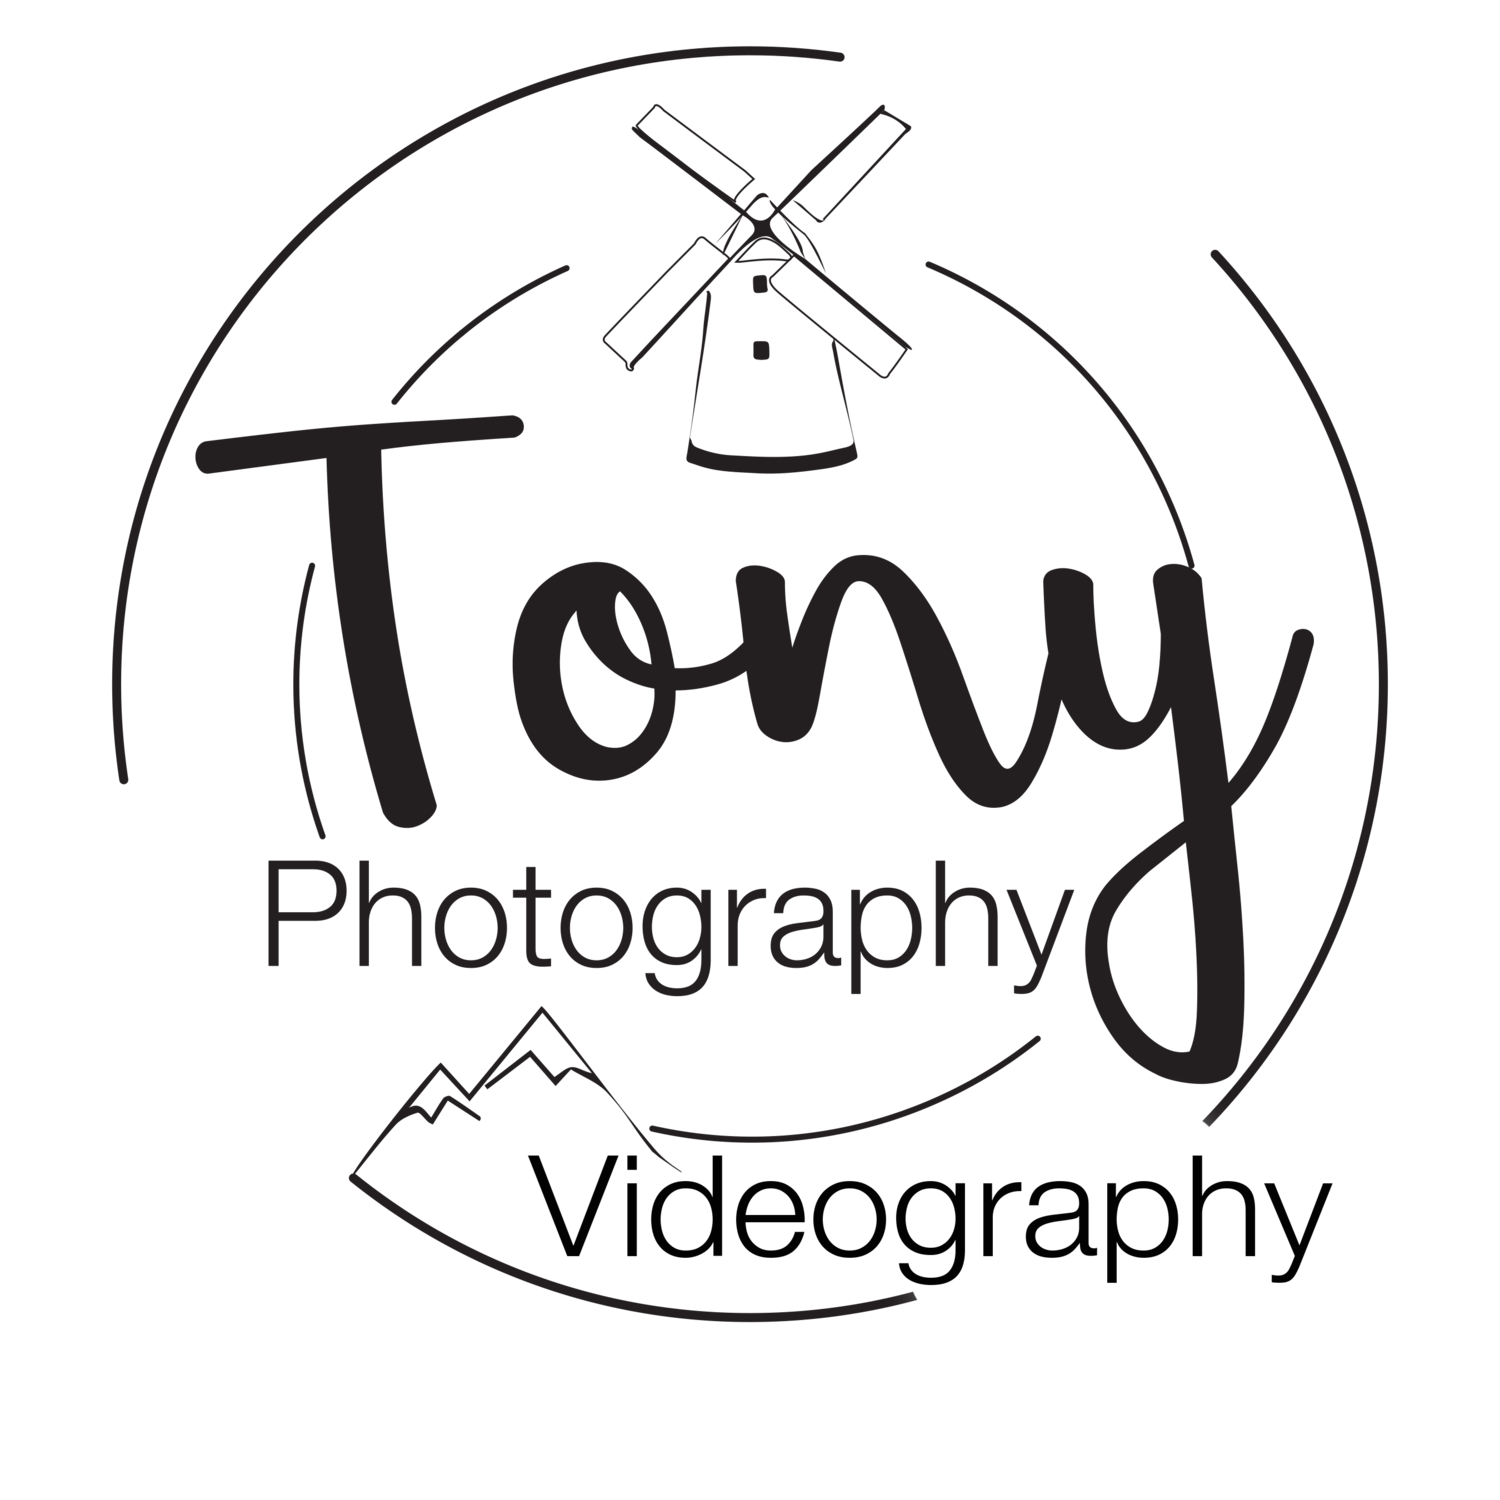 Tony Photography